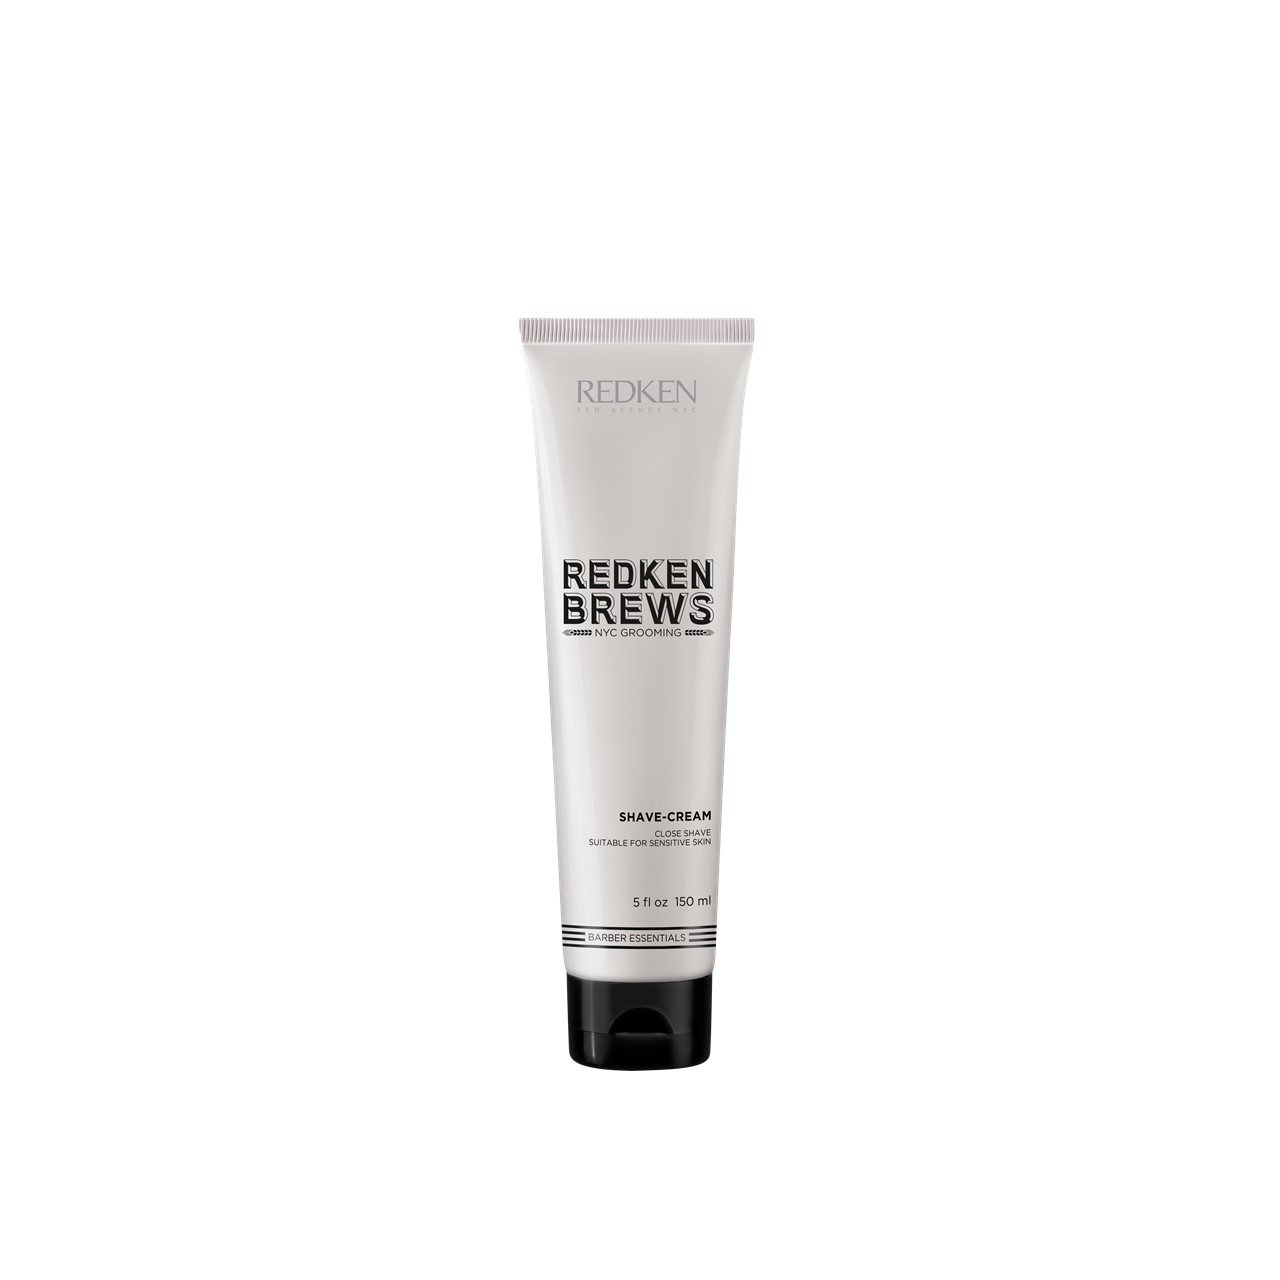 Redken Brews Shave-Cream 150ml (5.07fl oz)